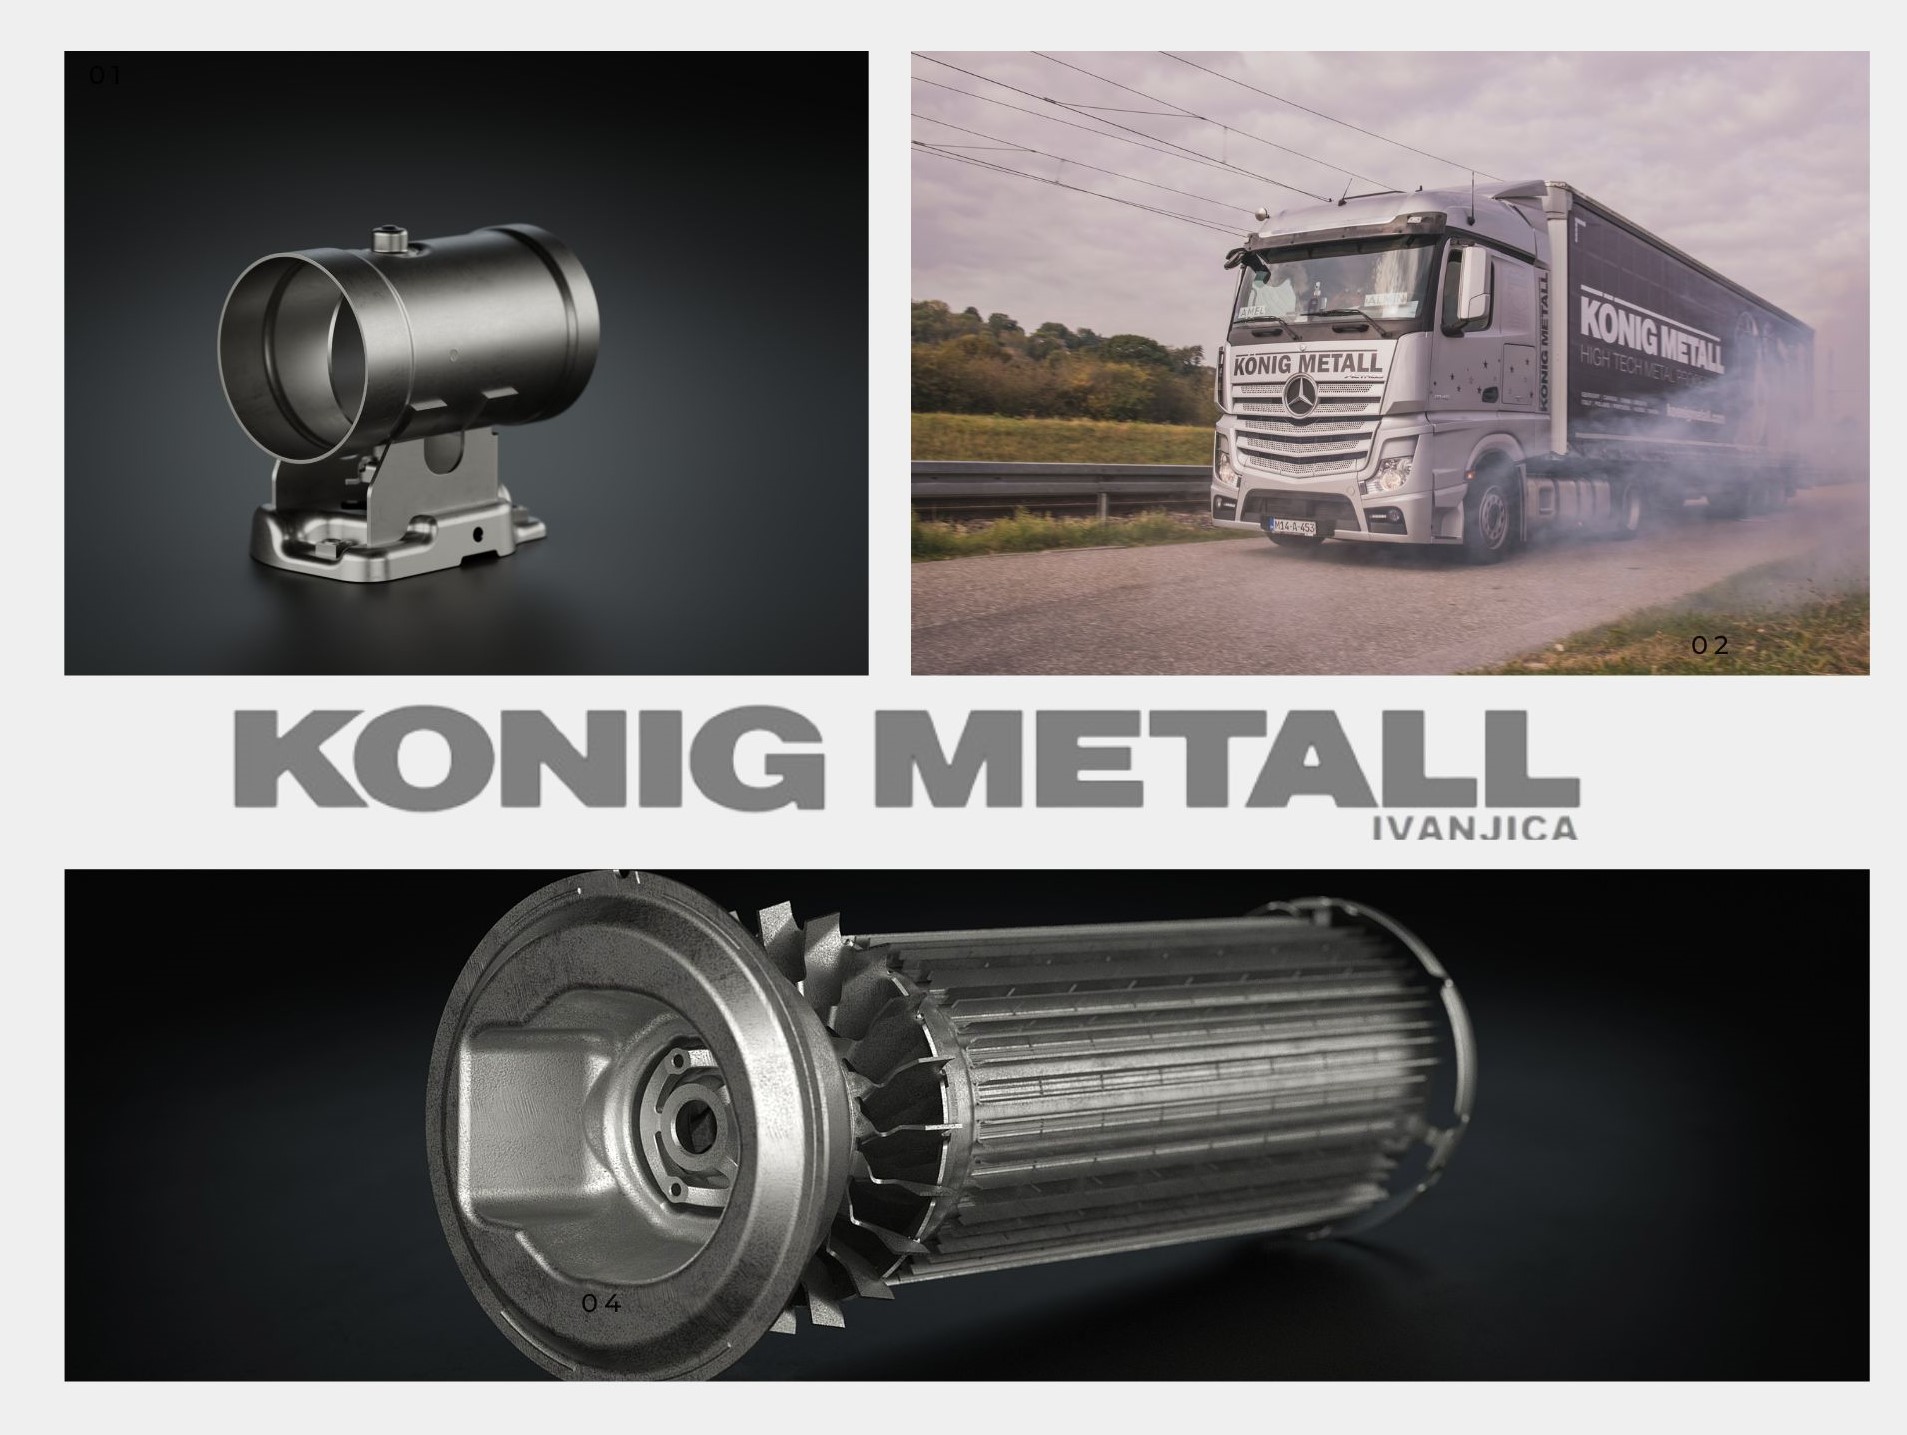 IL-Koning-metal-dva Kompaniji Koenig Metall d.o.o. u Ivanjici potrebni radnici